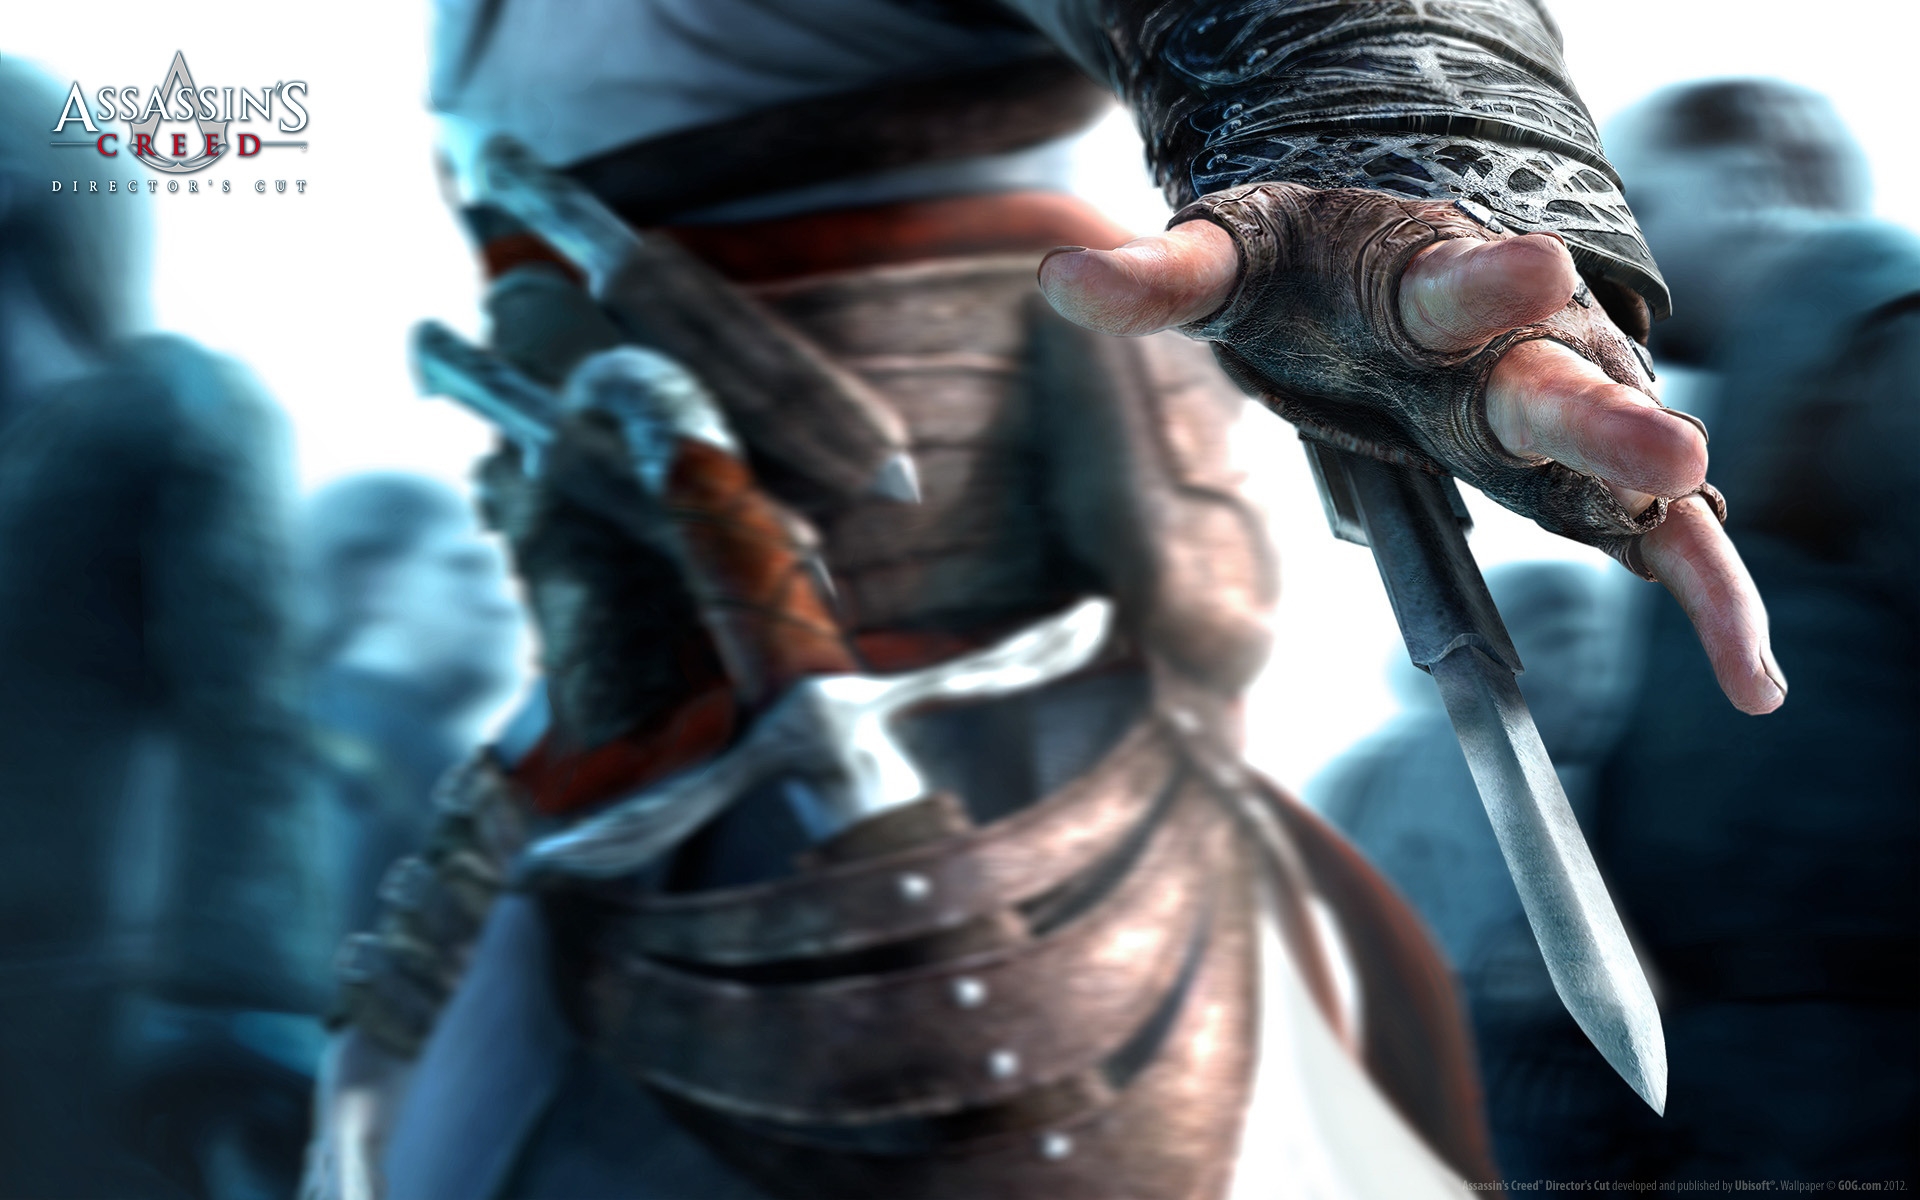 Assassins Creed Hidden Blade for 1920 x 1200 widescreen resolution